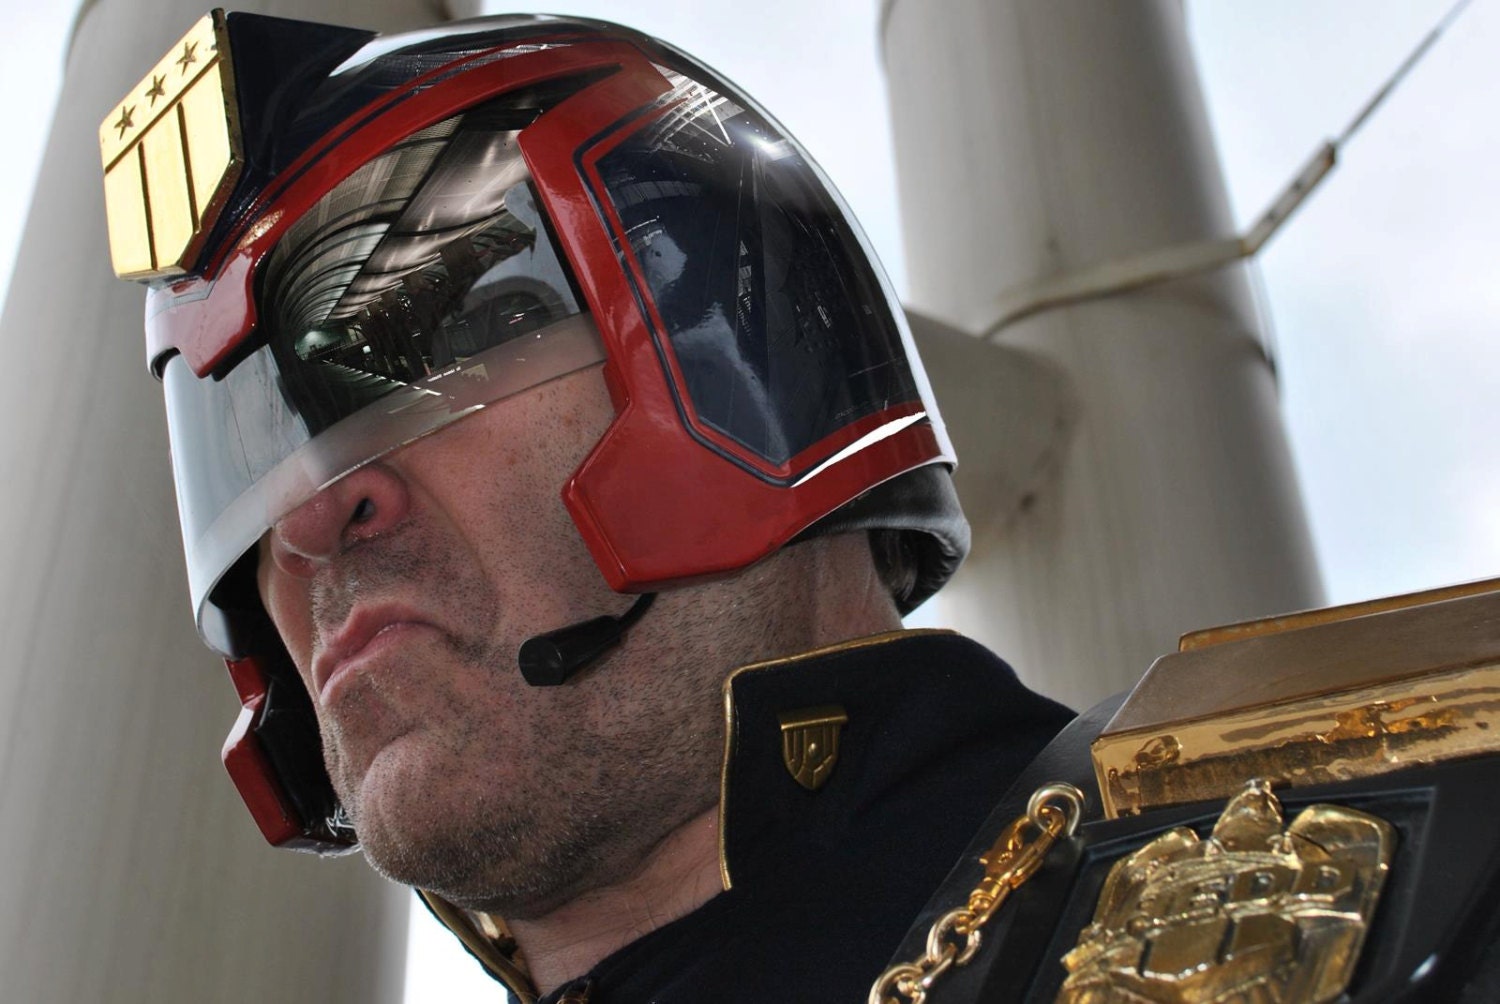 Hq Finished Judge Dredd Helmet 1995 Stallone